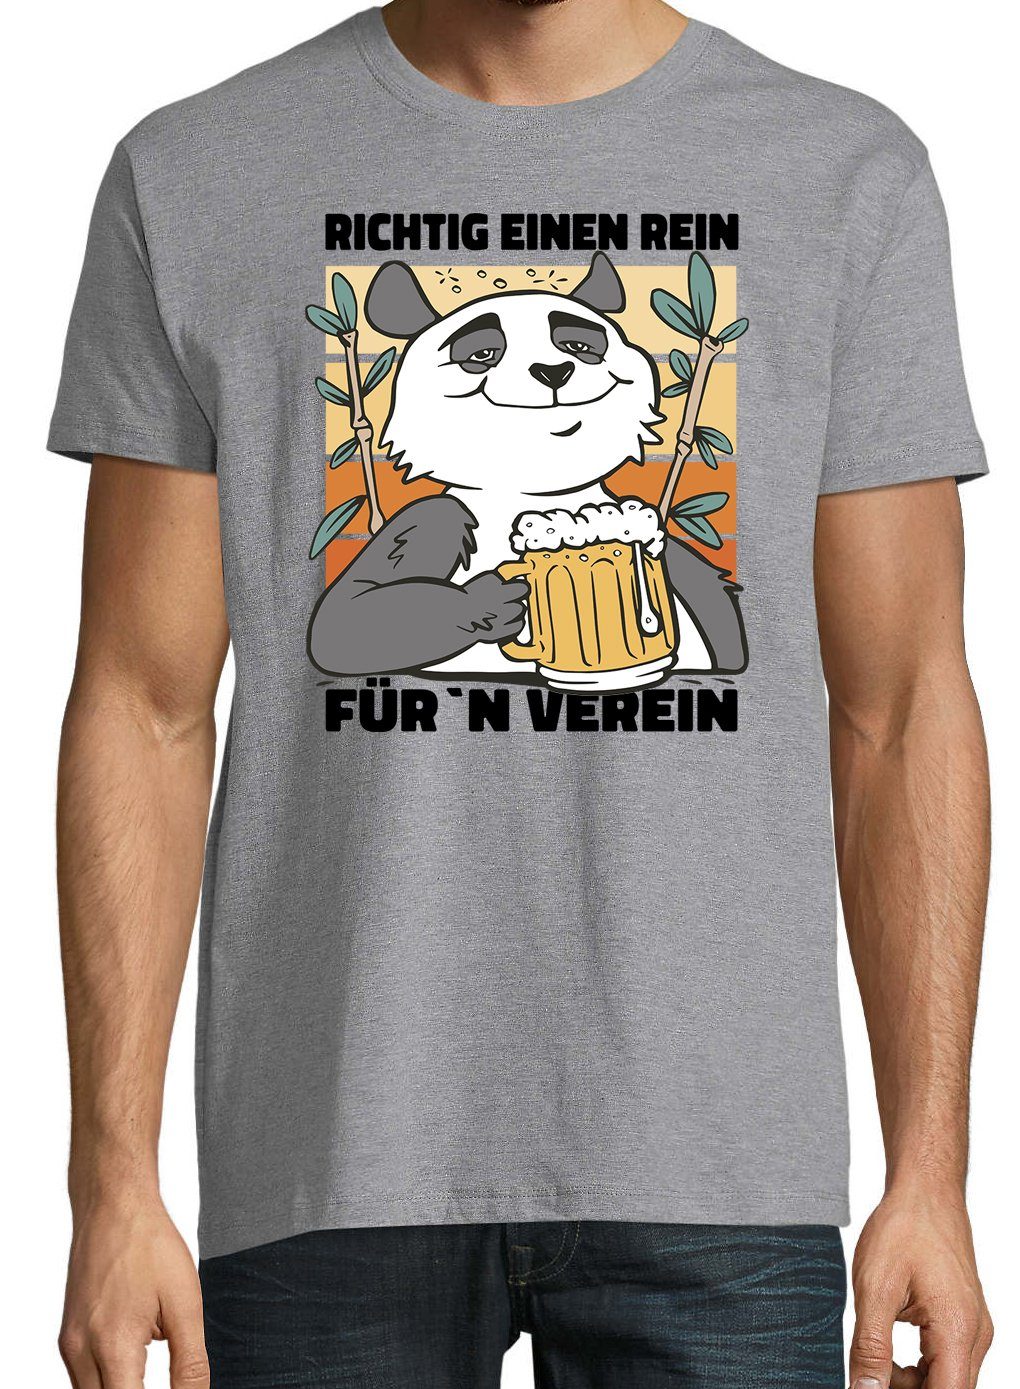 Herren Für´n Frontprint mit T-Shirt Rein, Verein" Shirt Grau "Richtig Ein Youth trendigem Designz